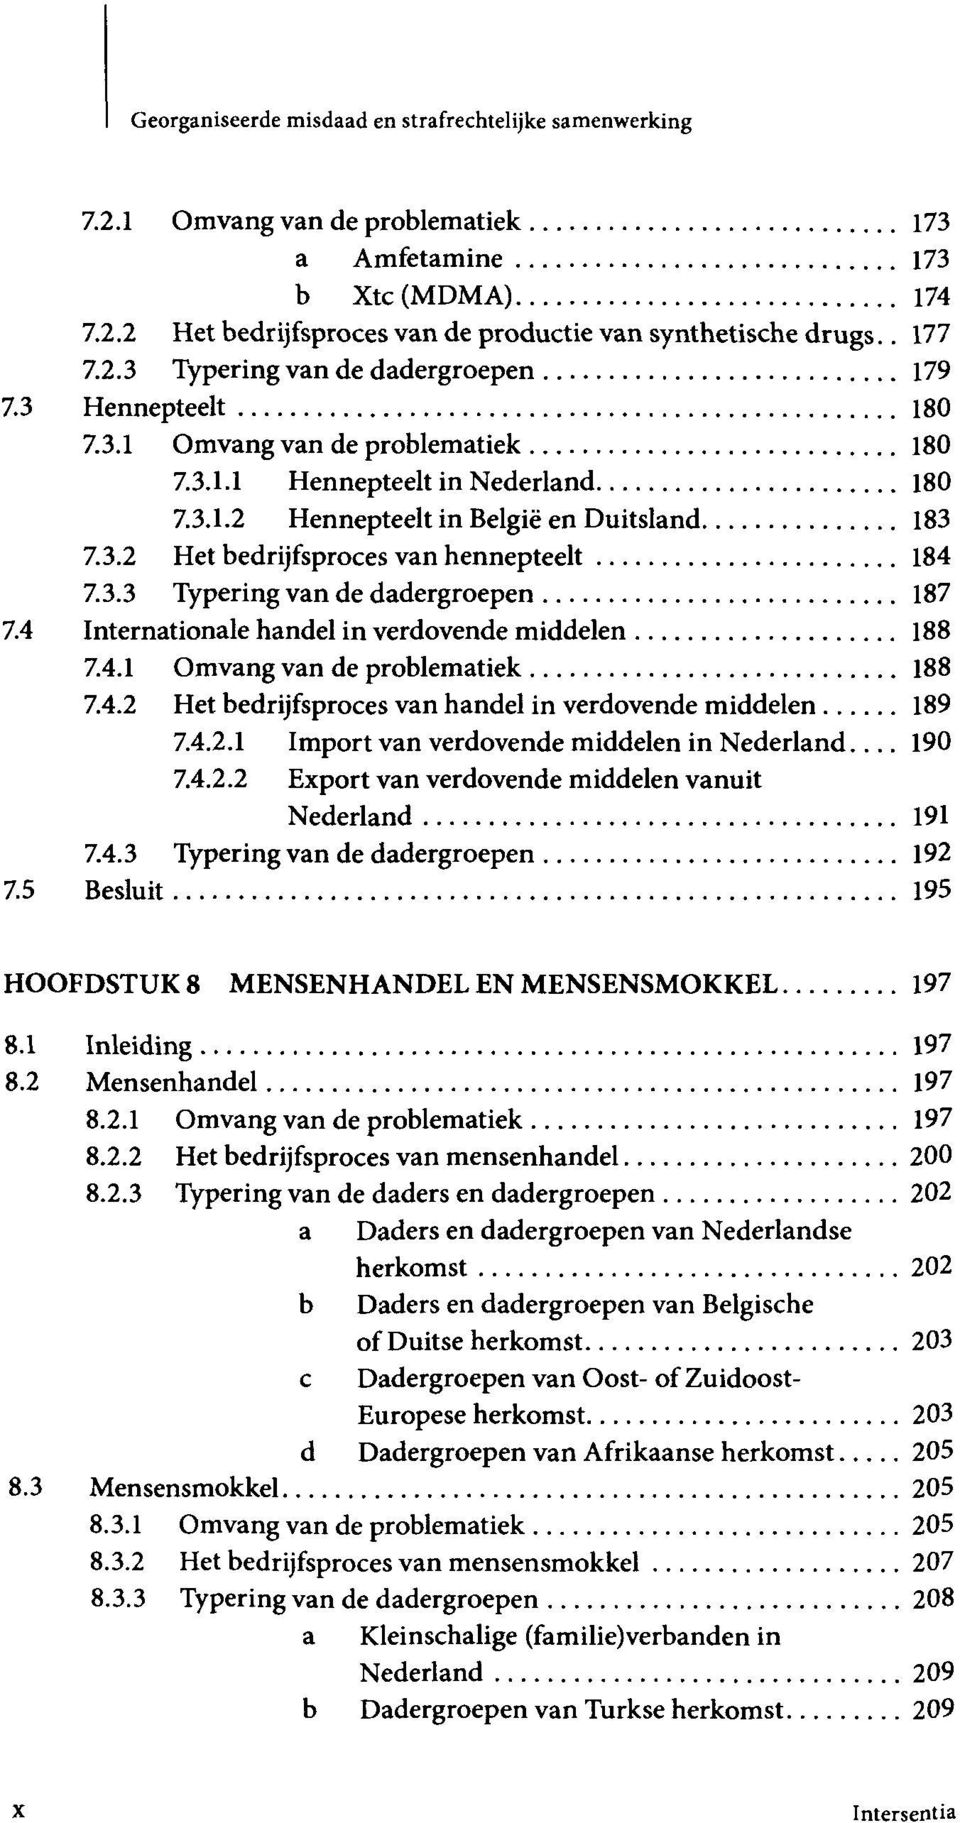 3.3 Typering van de dadergroepen 187 7.4 Internationale handel in verdovende middelen 188 7.4.1 Omvang van de problematiek 188 7.4.2 Het bedrijfsproces van handel in verdovende middelen 189 7.4.2.1 Import van verdovende middelen in Nederland.